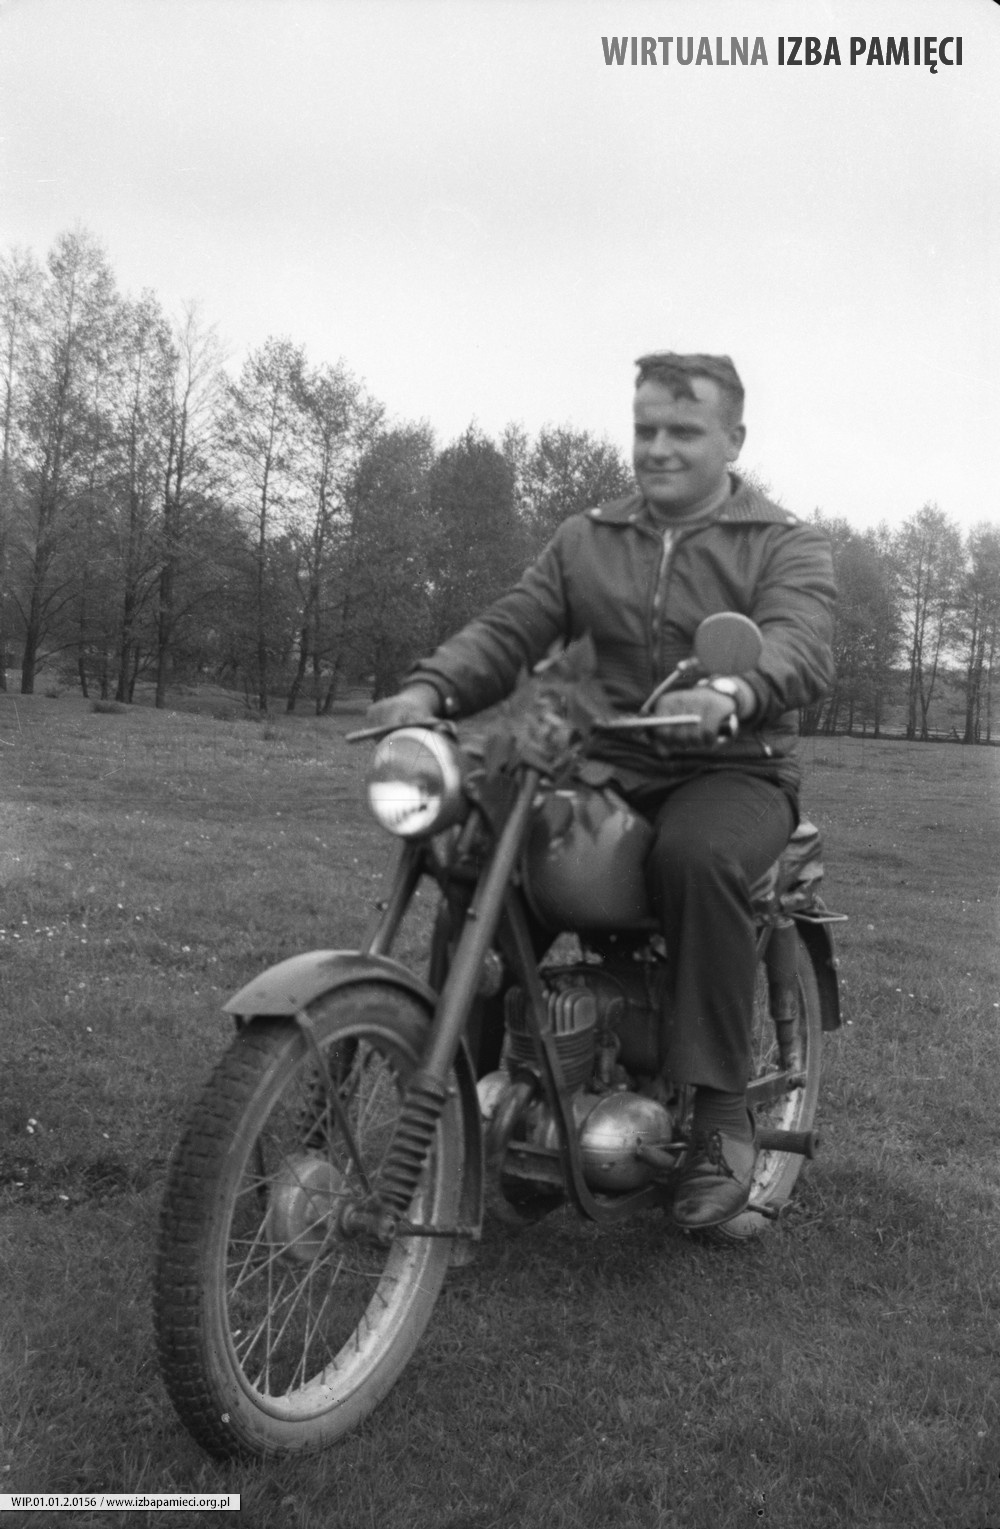 1968. Jan Rokosz z Mołodycza na motocyklu